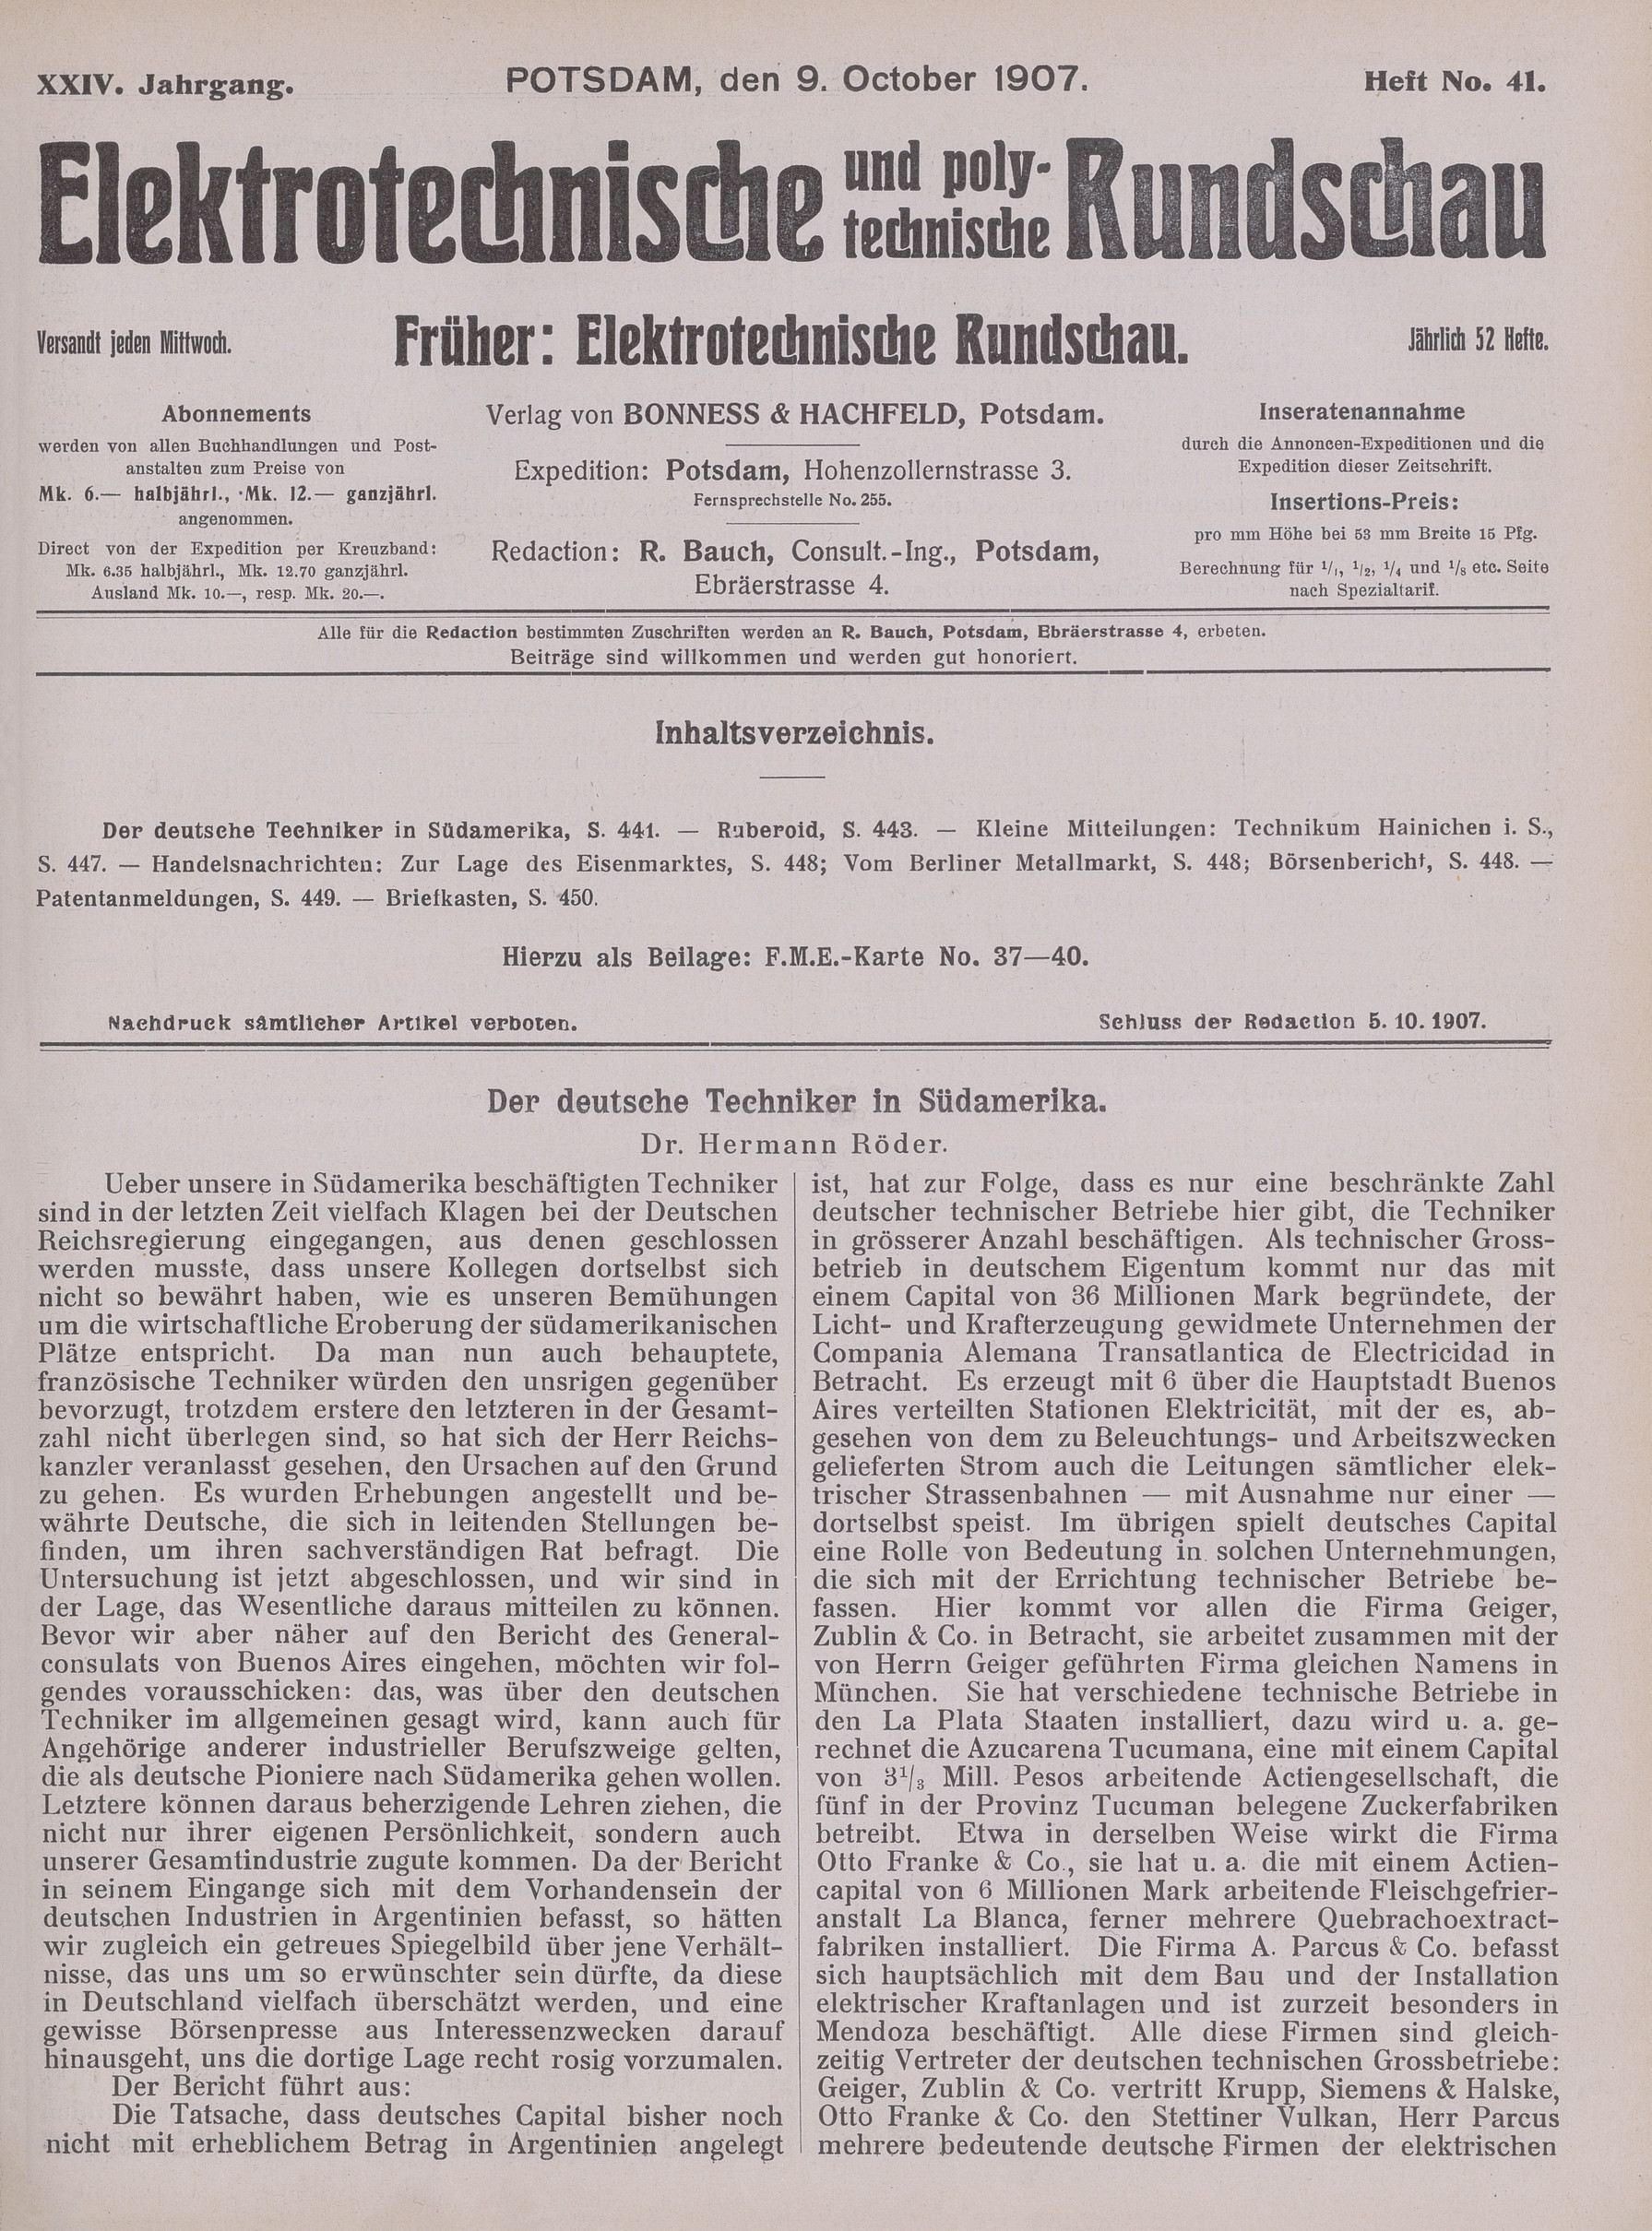 Elektrotechnische und polytechnische Rundschau, XXIV. Jahrgang, Heft No. 41